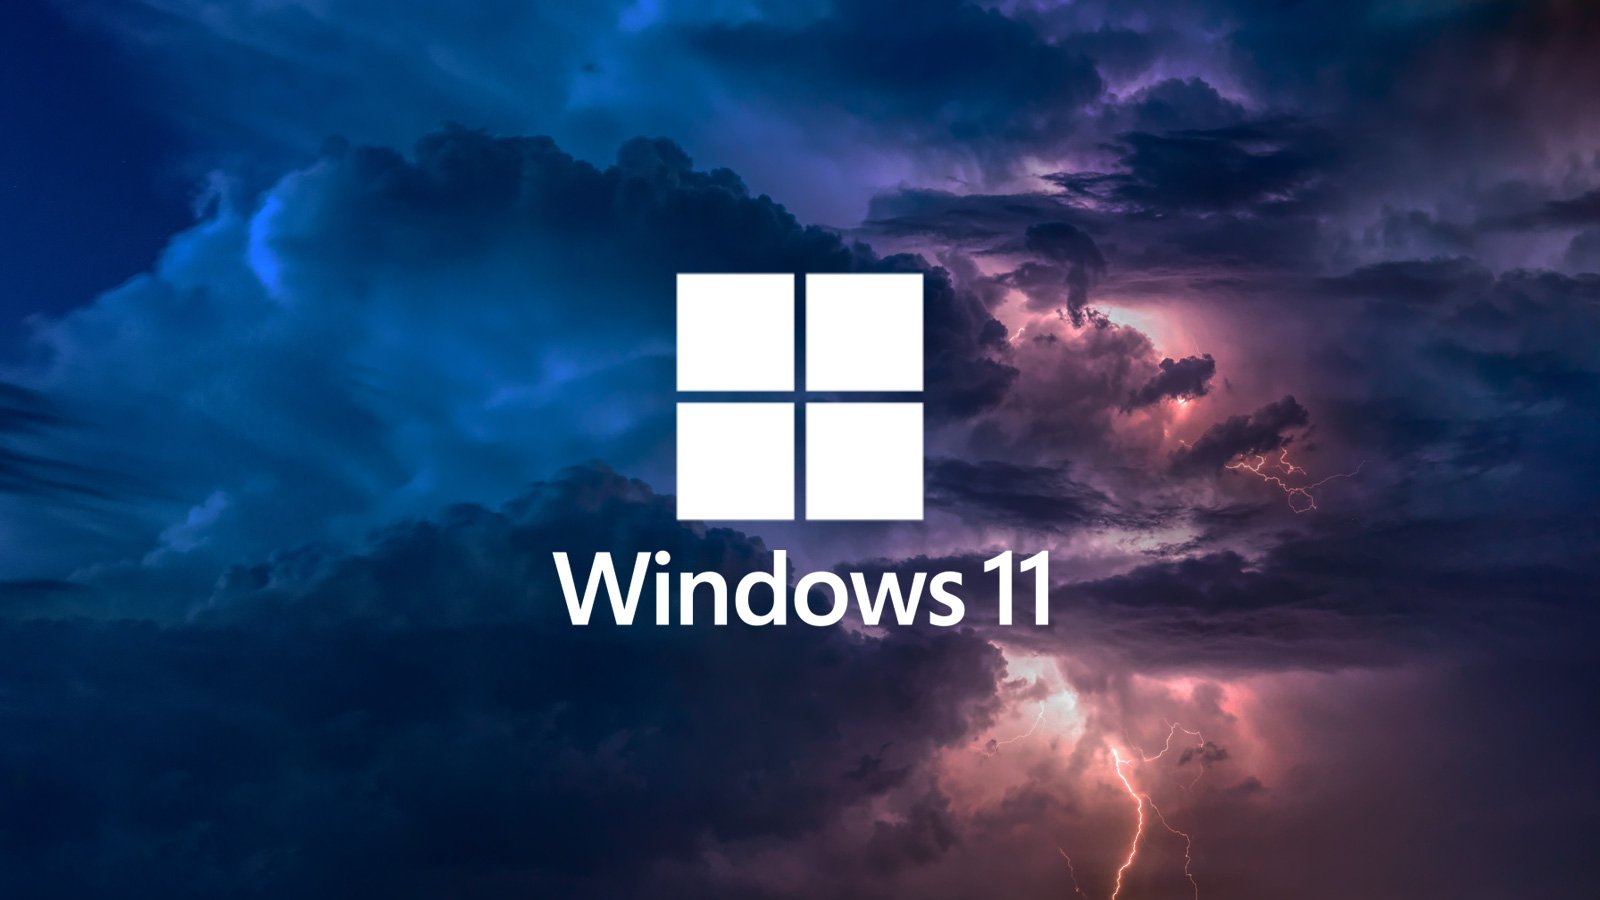 Thưởng thức những hình nền Windows 11 đẹp mắt và đa dạng đến từ các nghệ sĩ thiết kế tài năng. Bạn sẽ được truyền cảm hứng và tận hưởng trải nghiệm tuyệt vời khi thay đổi hình nền theo sở thích cá nhân.